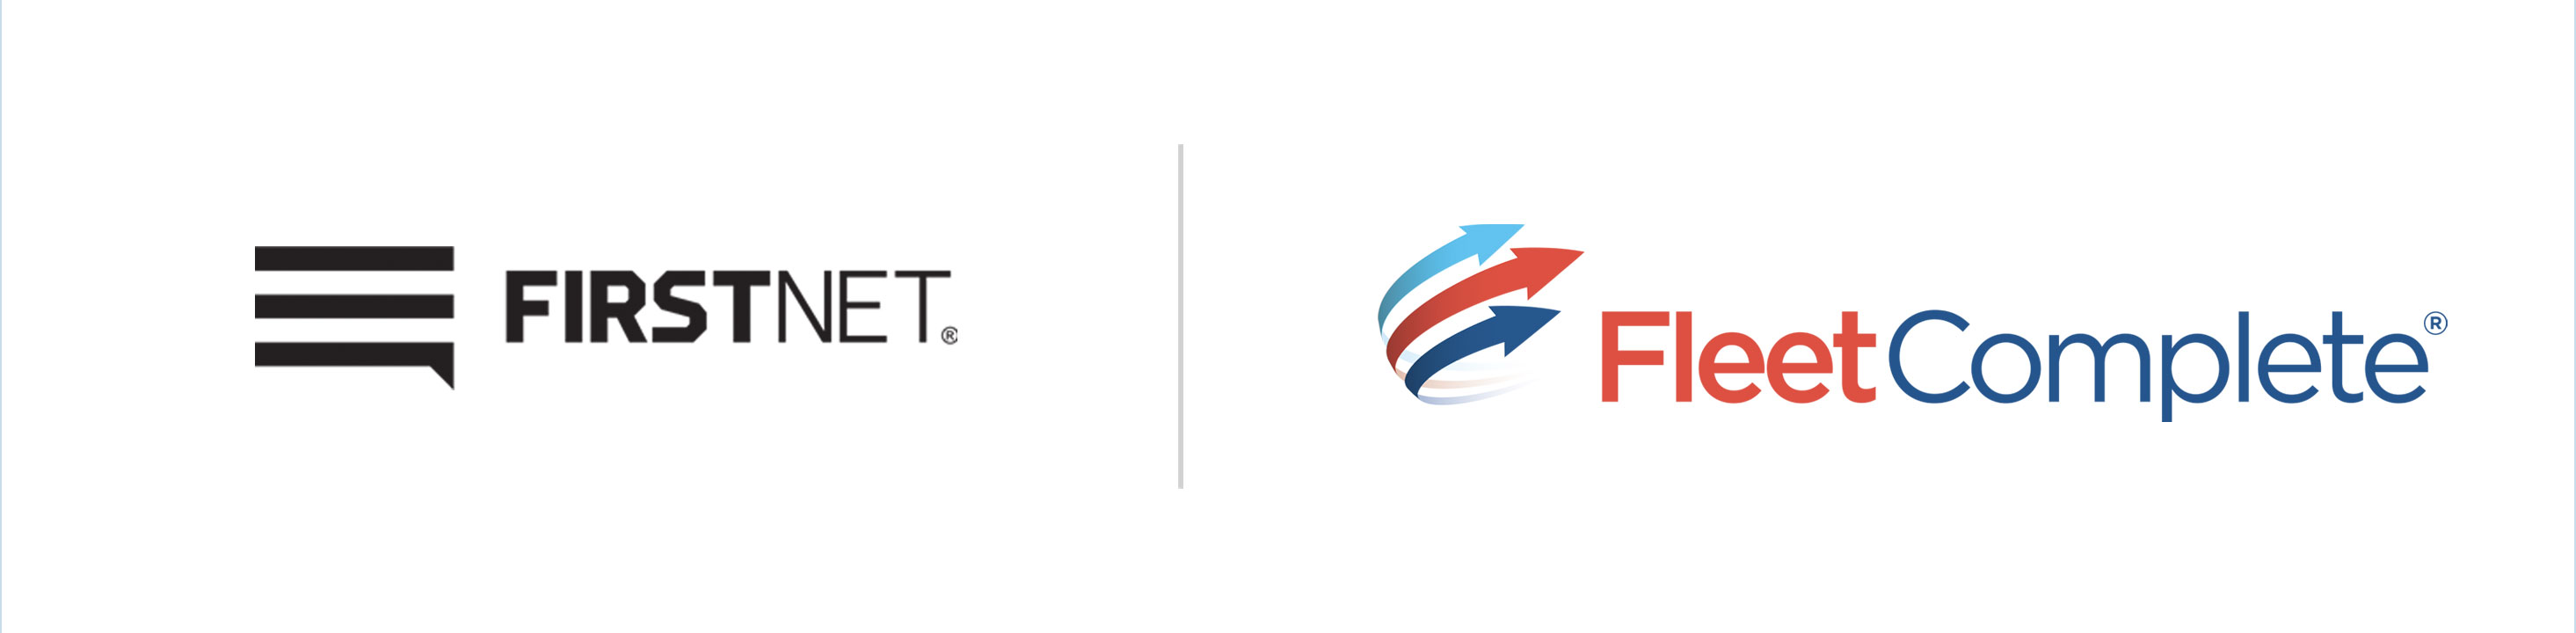 FirstNet and Fleet Complete logos..